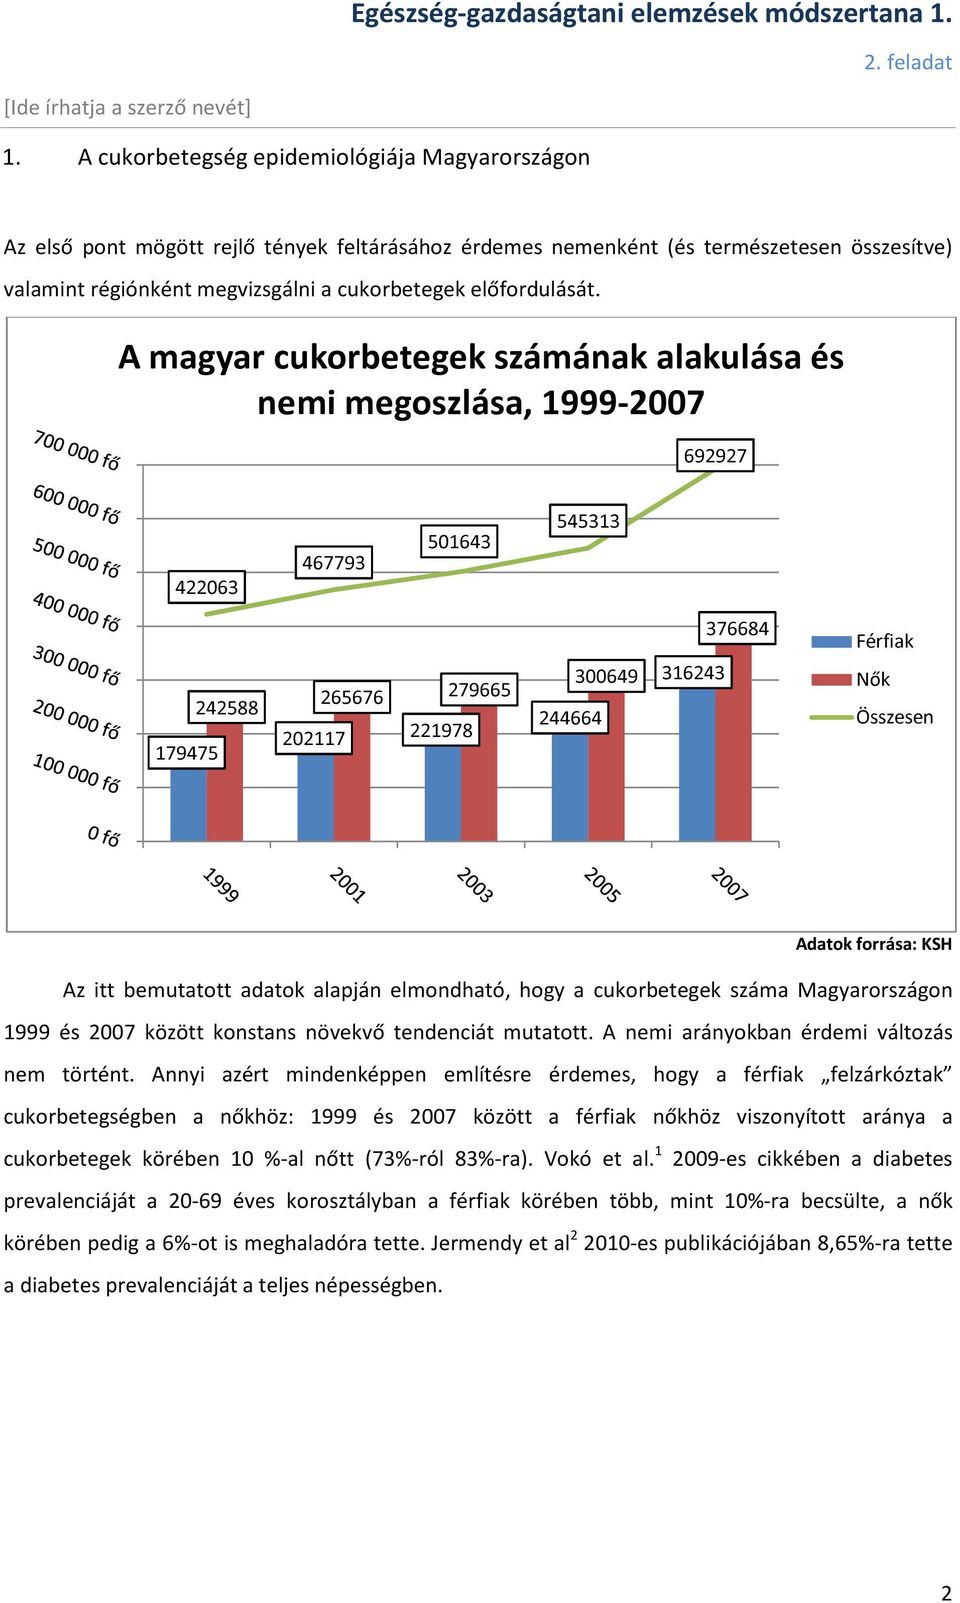 cukorbetegség magyarországon statisztika